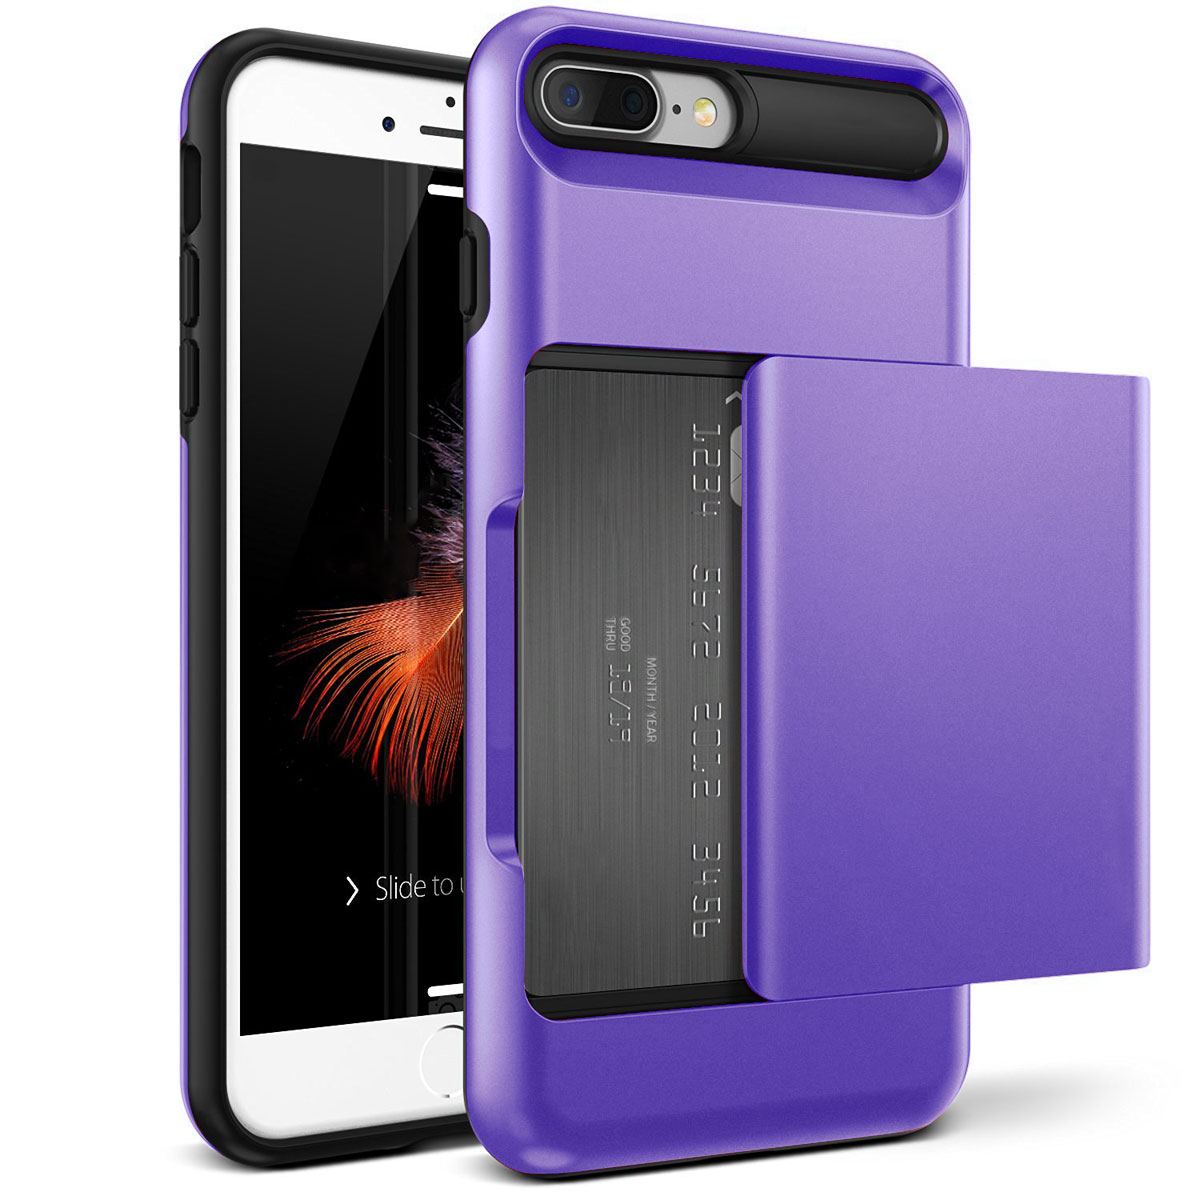 Credit Card Holder Wallet Shockproof Hard Case Cover For Apple iPhone 8 / 8 Plus | eBay